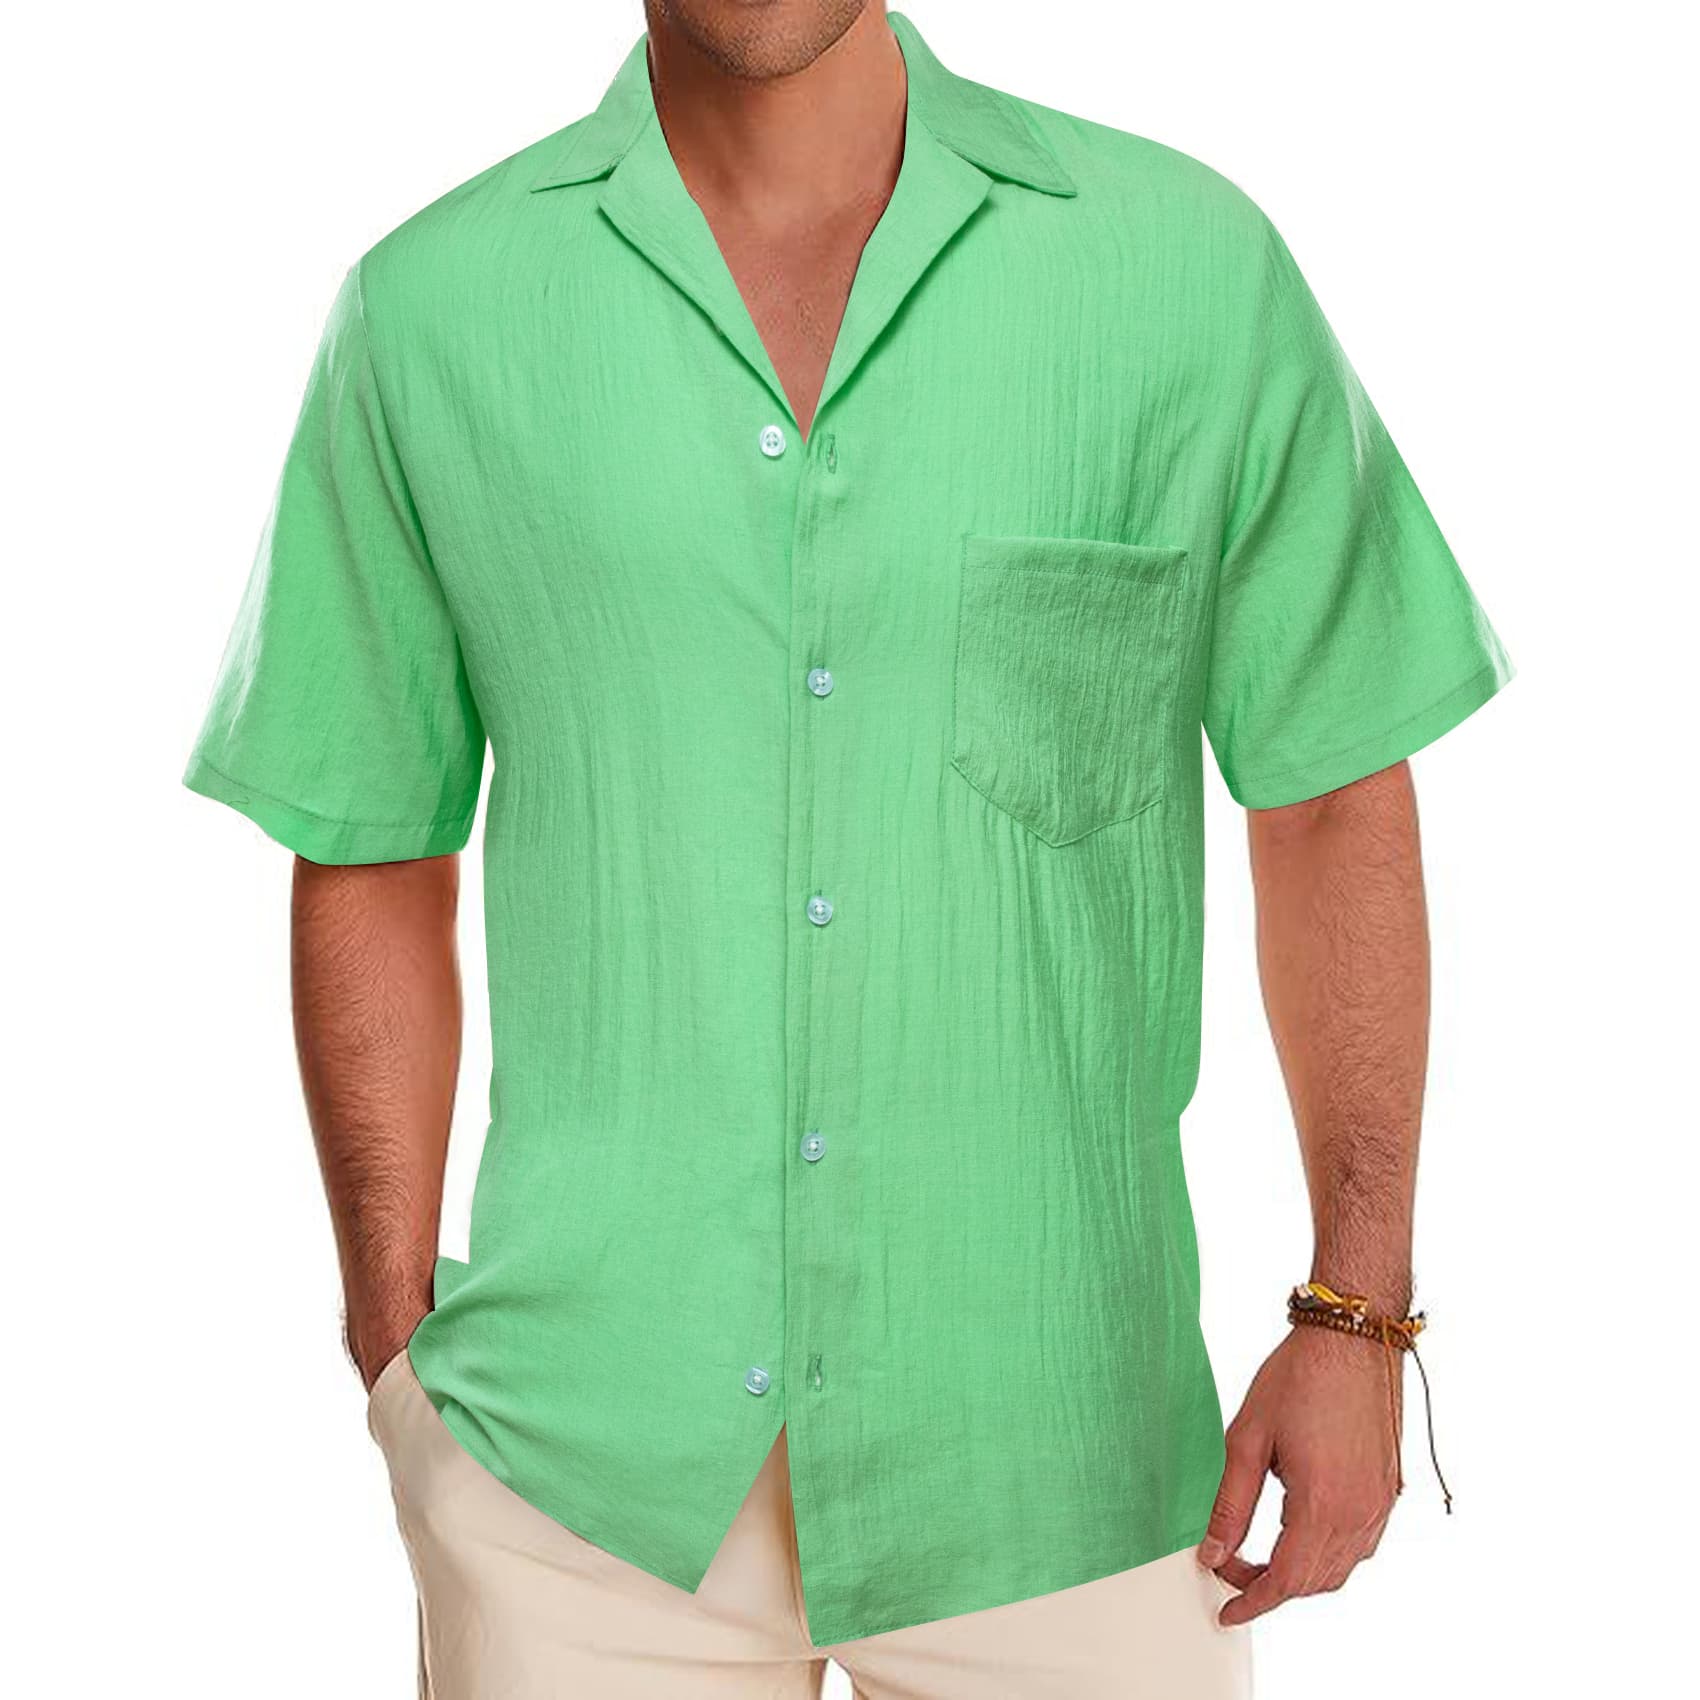 Light green solid mens short sleeve button down shirt